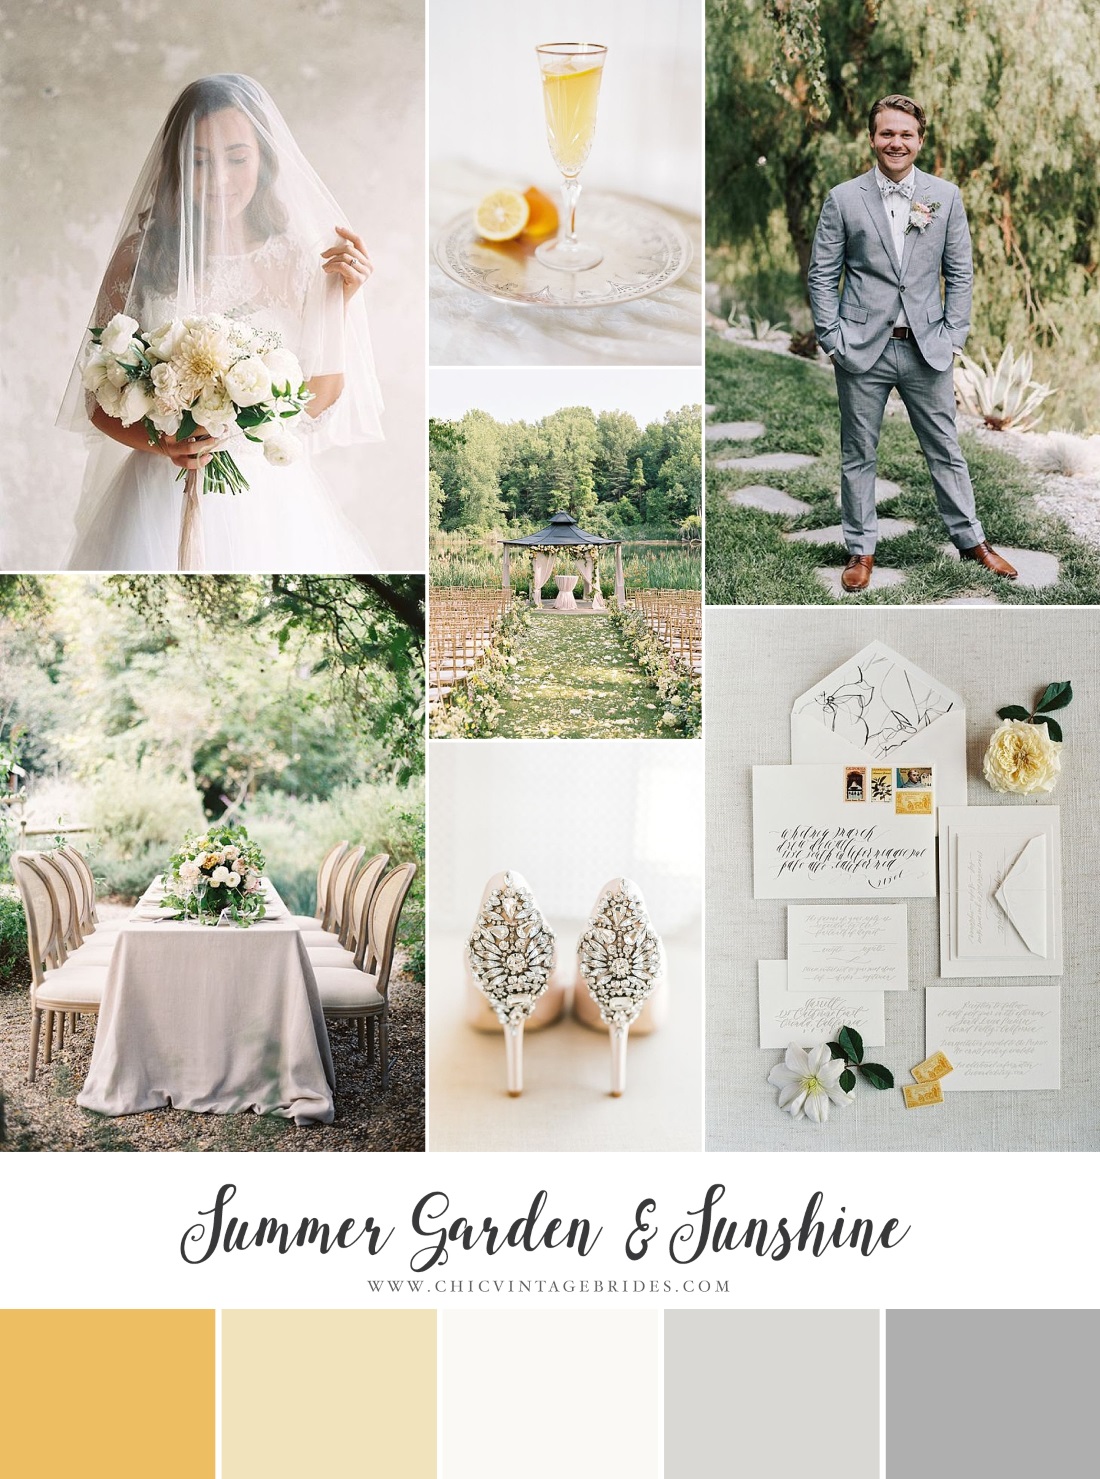  Summer Garden & Sunshine - Chic Garden Wedding Inspiration in Yellow & Grey